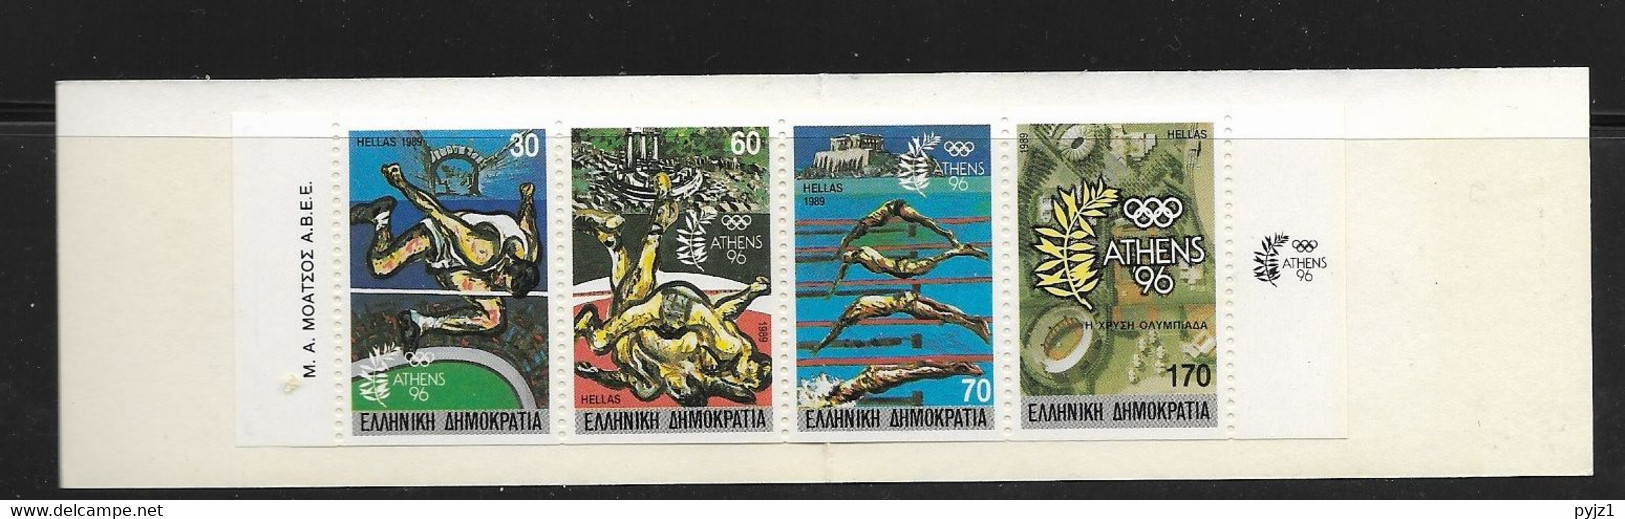 1989 MNH  Greece, Booklet Olympic Games  MH11 - Postzegelboekjes